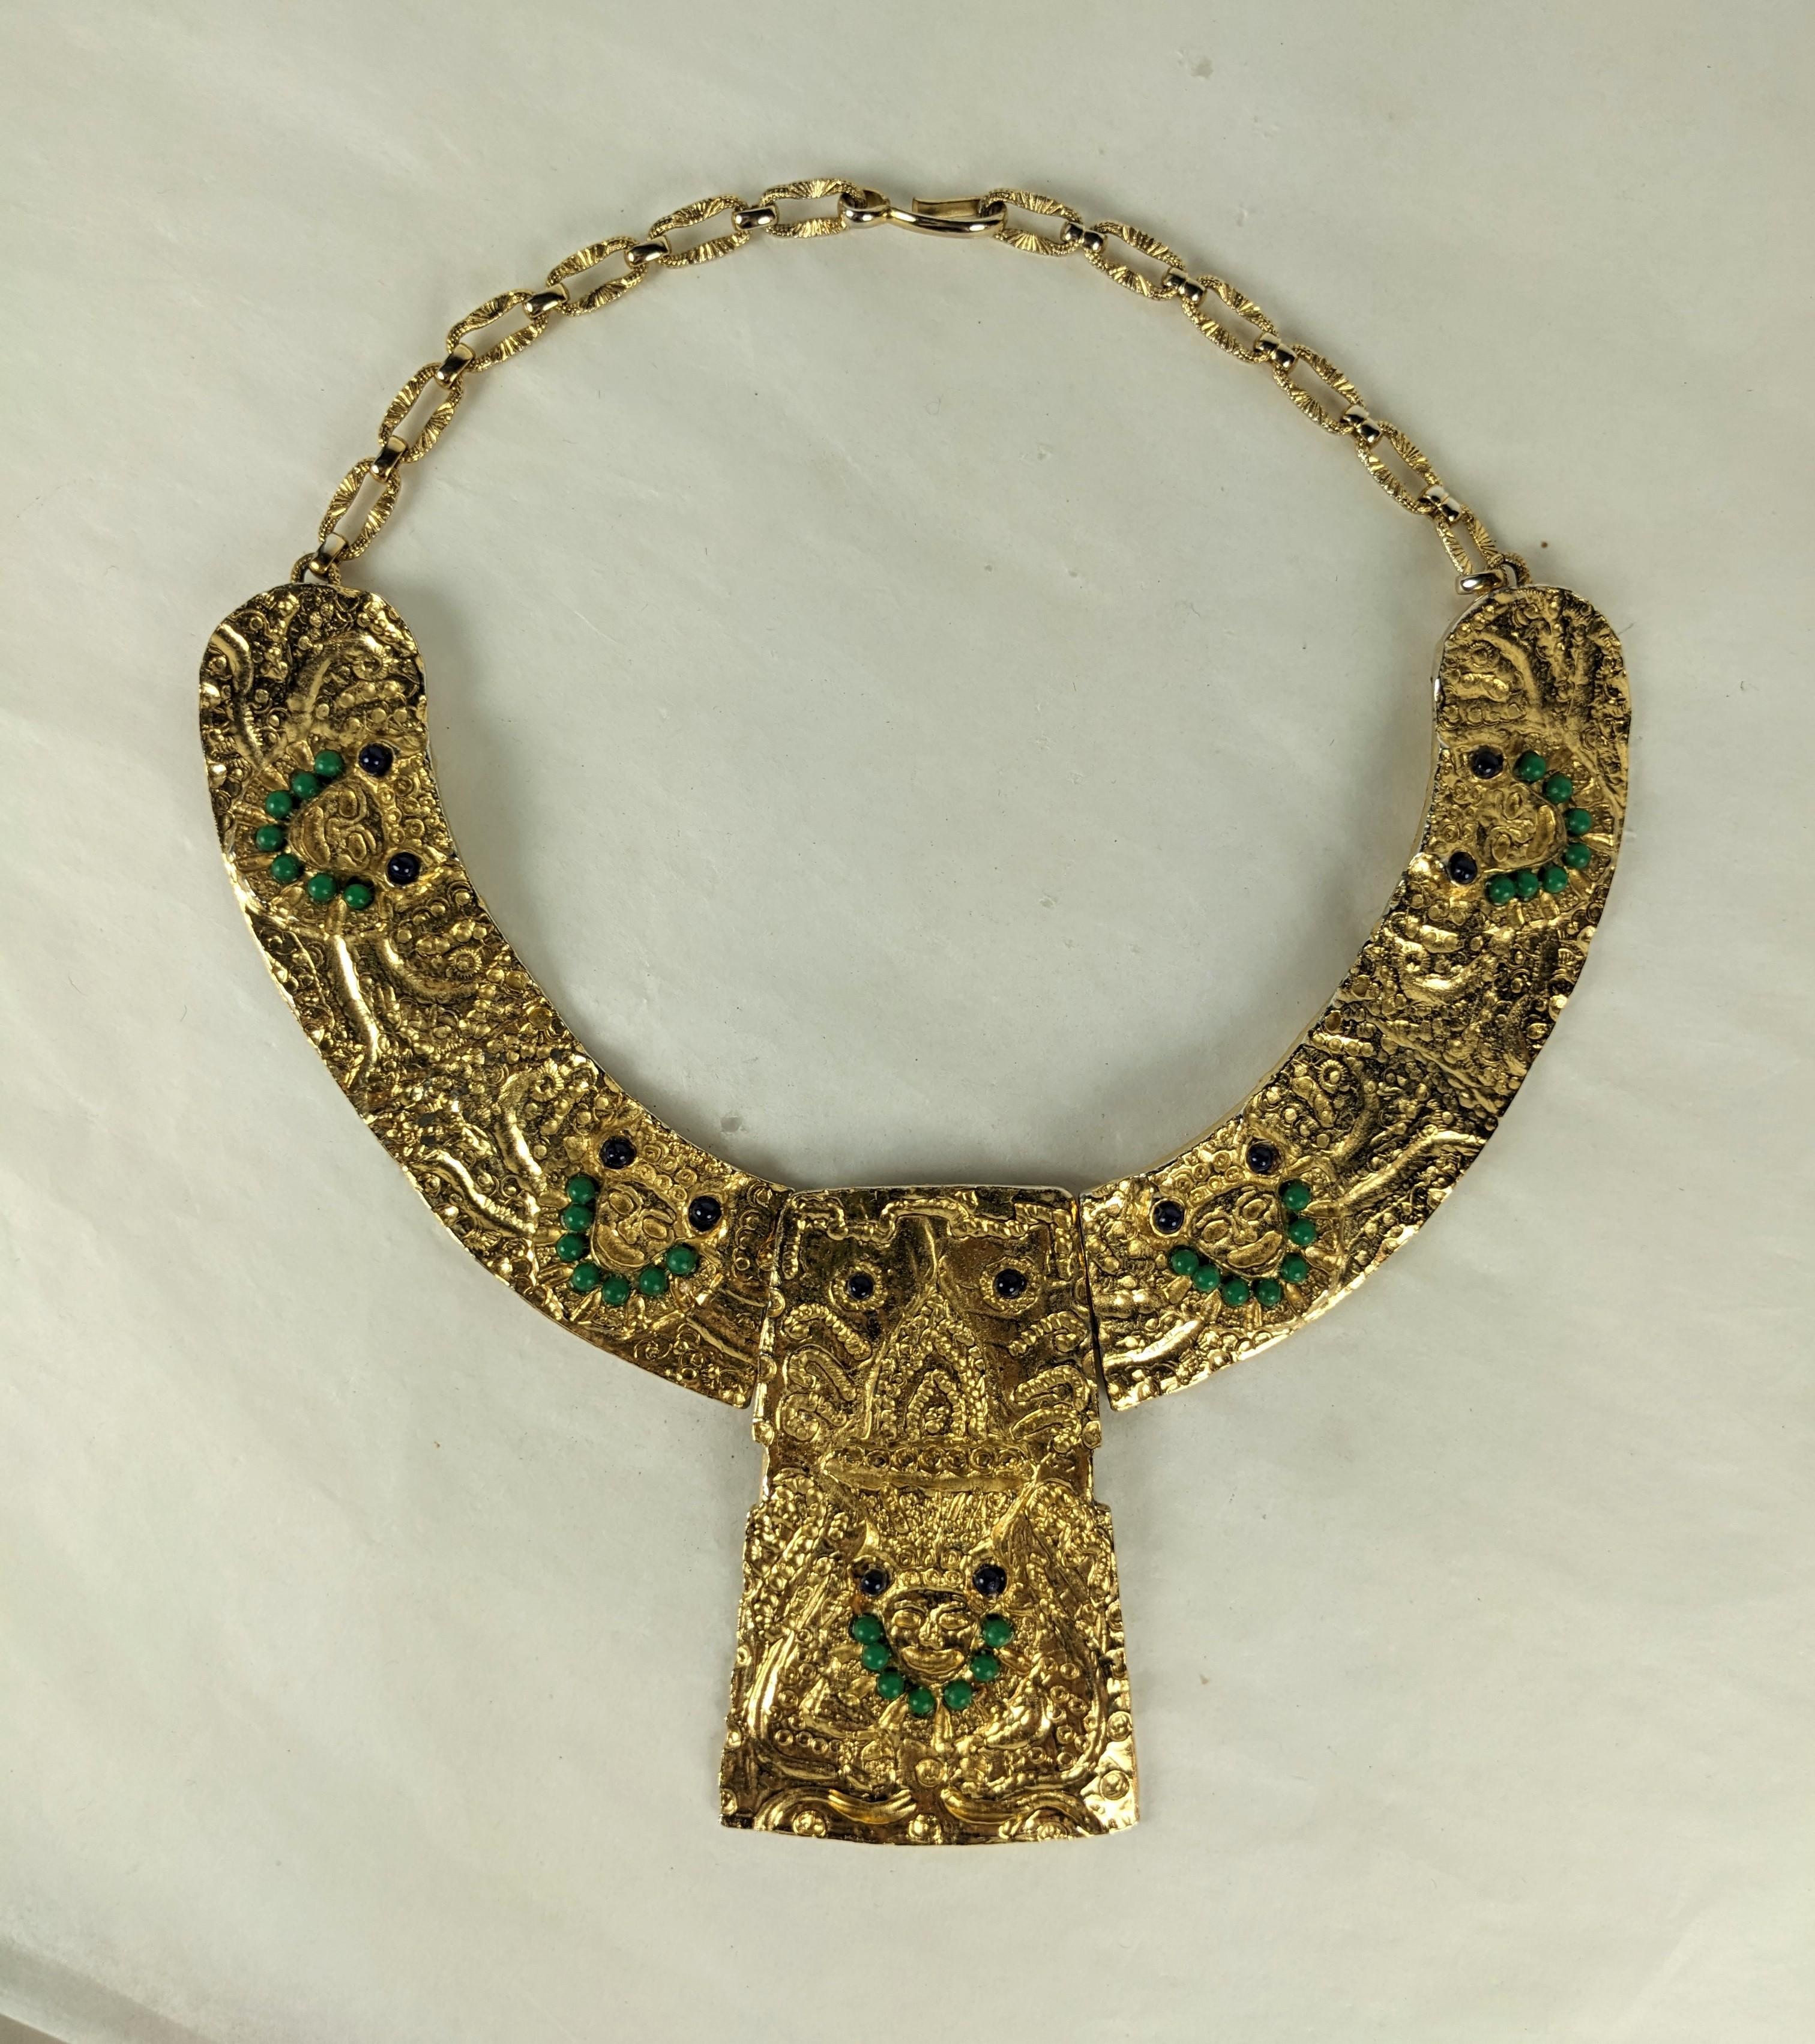 Collier en vermeil des années 1960 avec motifs de masques Pre-Columbian. Le collier rigide est fixé à l'avant par une charnière à la plaque centrale. Métal doré avec des perles noires et vertes. Pièce centrale de 3